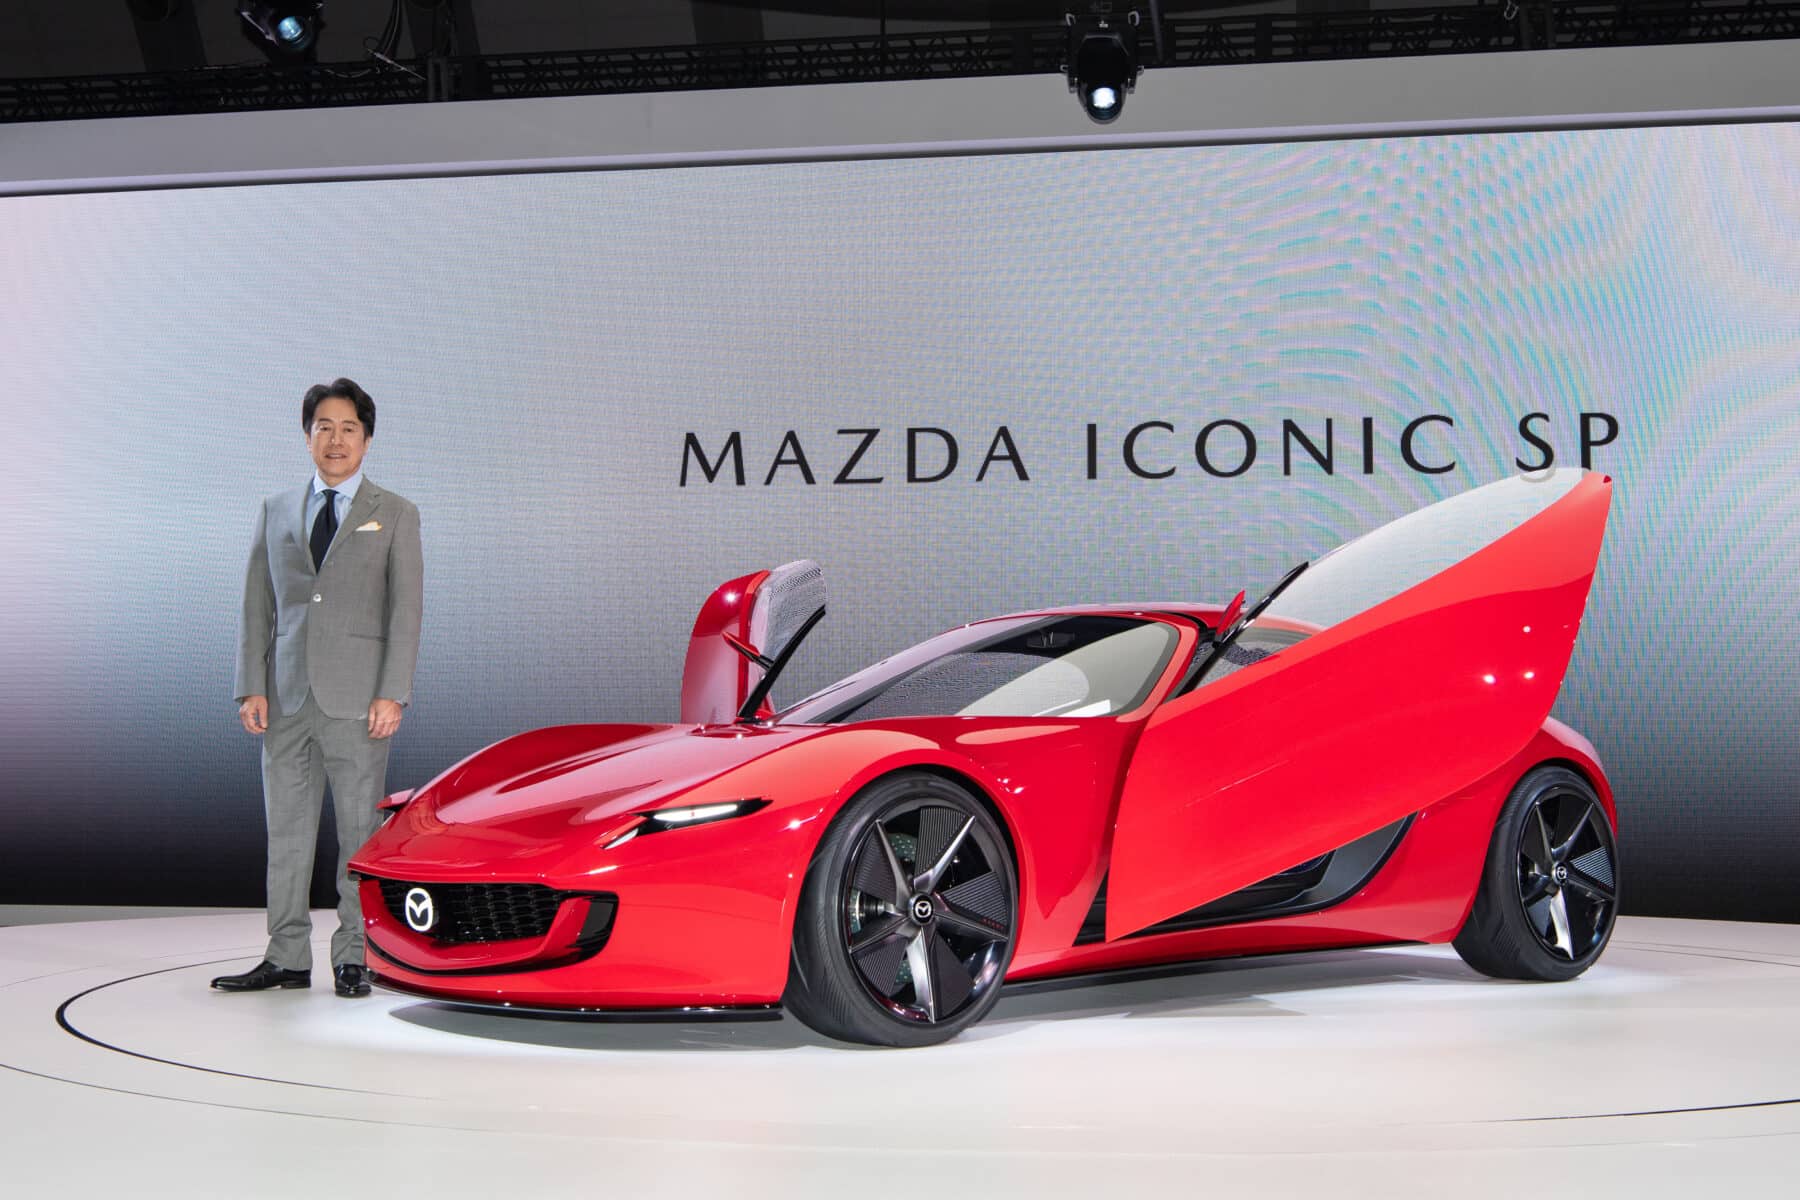 Mazda-Chef Masahiro Moro stellt den Mazda ICONIC SP auf der Japan Mobility Show vor